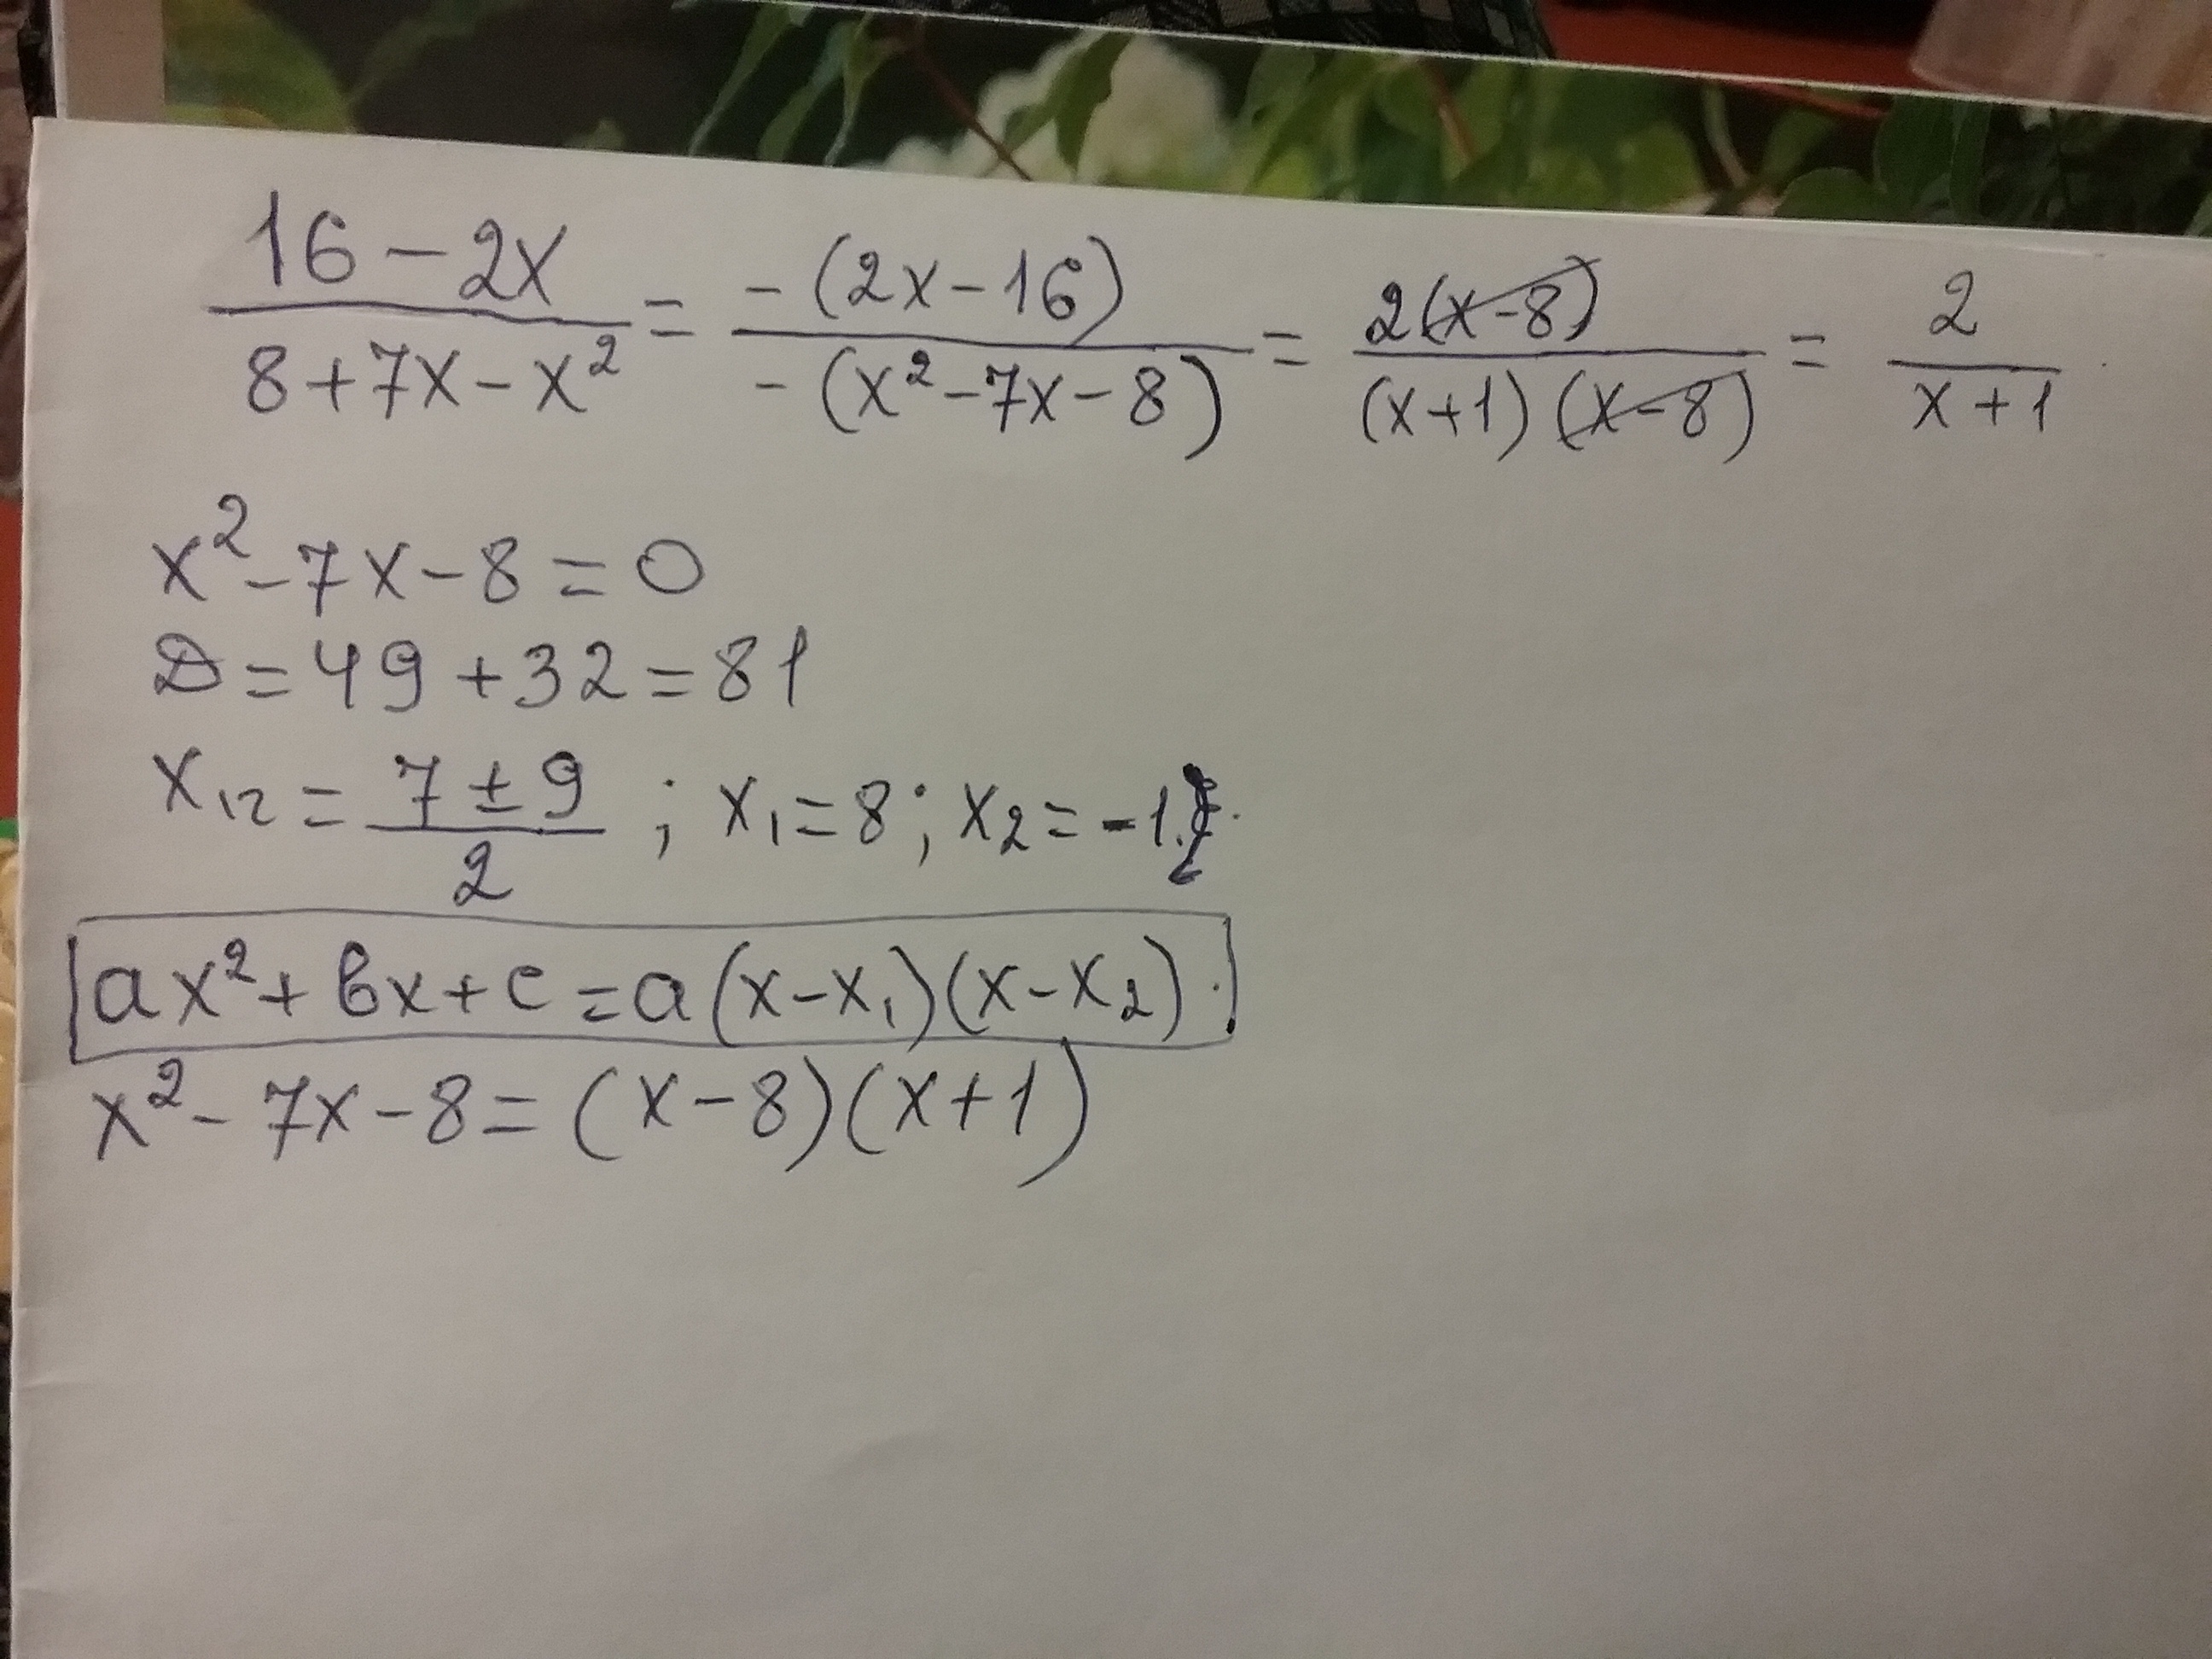 X2 8x 15 x 3. X^2+2x<2(16-x) сократи дробь. Сократи дробь (x-2)2 / x2+2x-8. Сократите дробь 16-x2/x2+8x+16. X²-8/x-2 сократить.